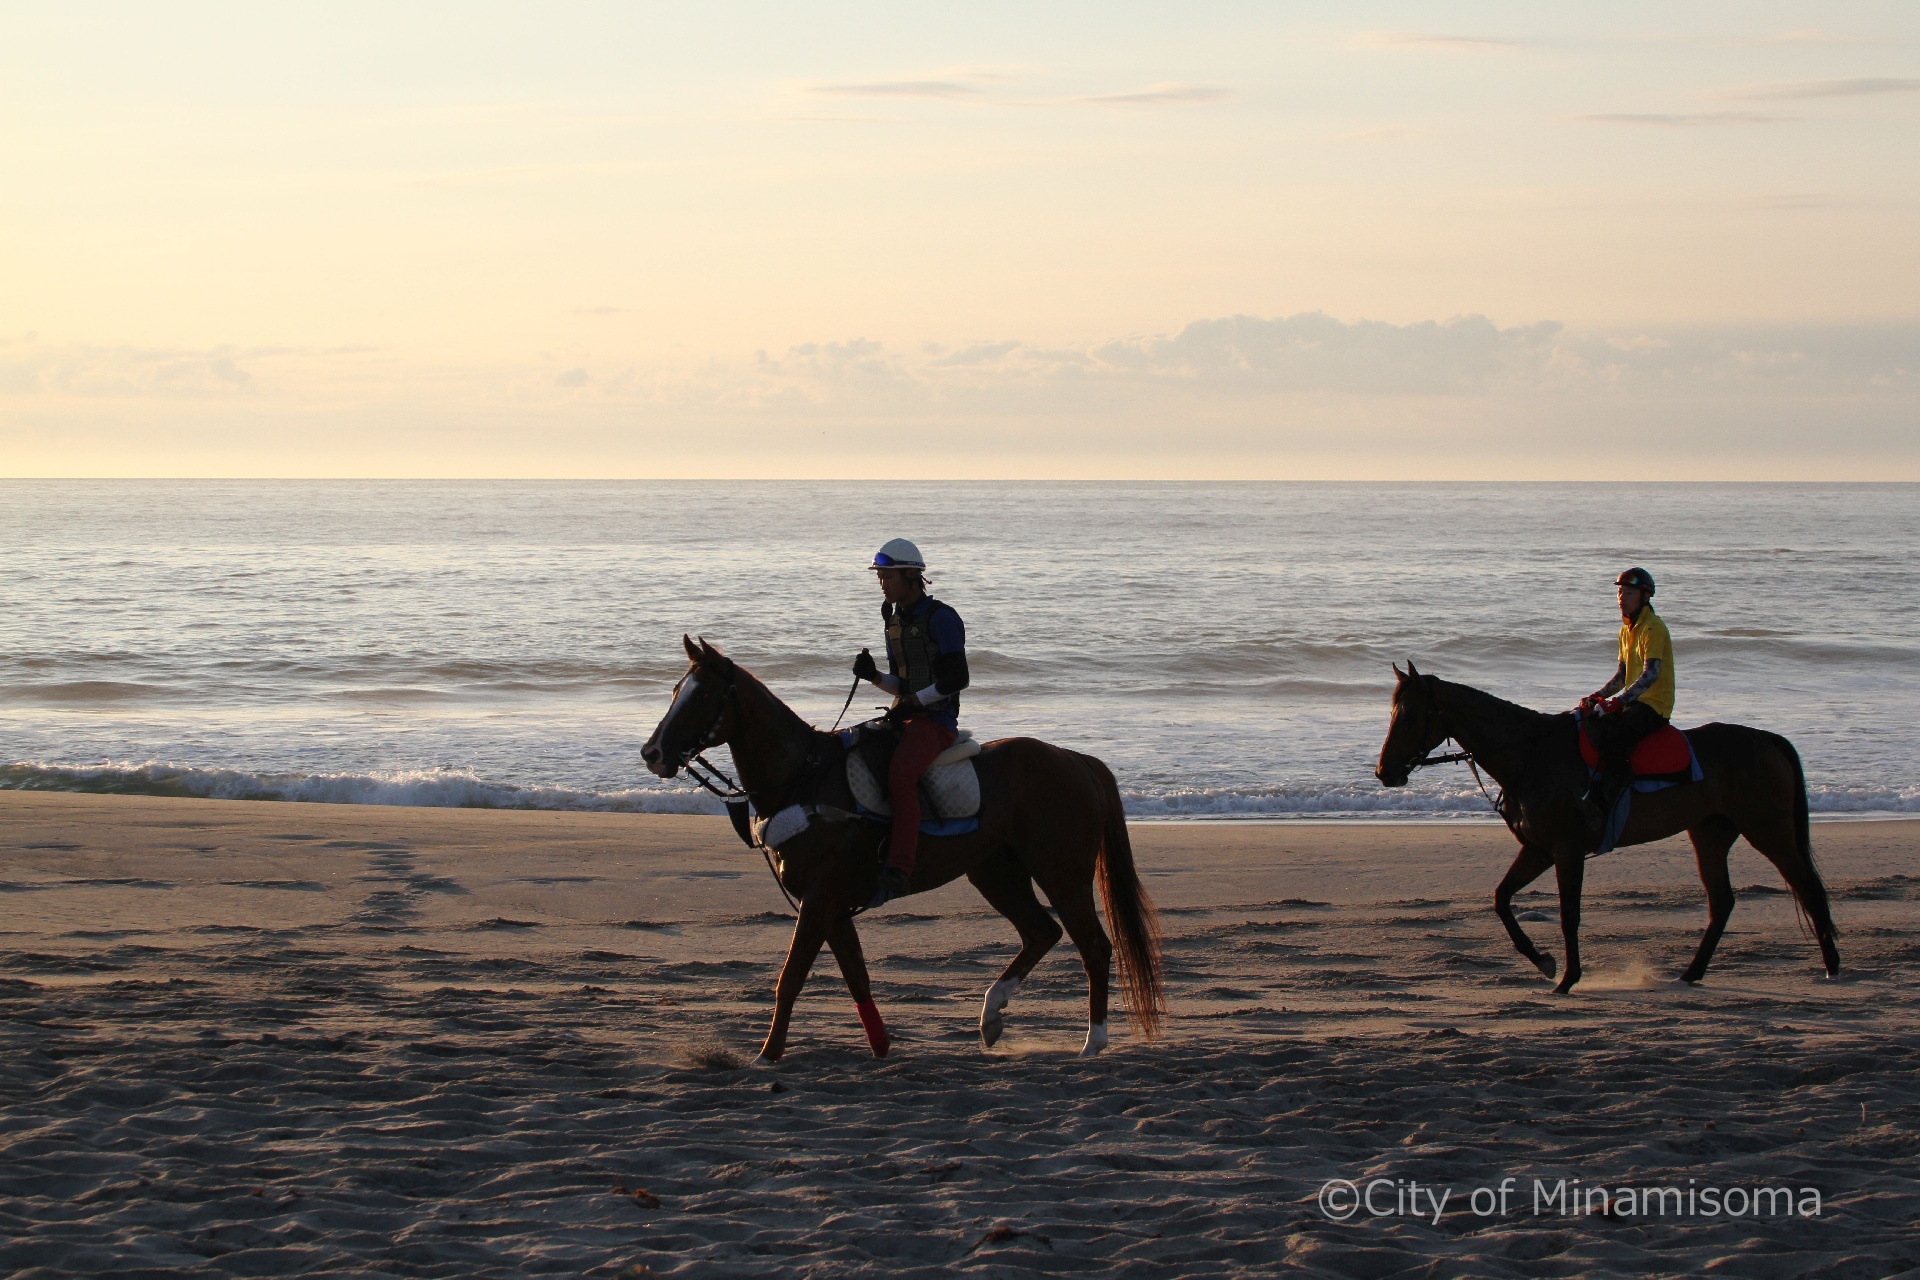 烏崎海岸での早朝錬馬の様子。7月の相馬野馬追に向けての練習で、早朝の砂浜を、人を乗せた馬が歩いている。